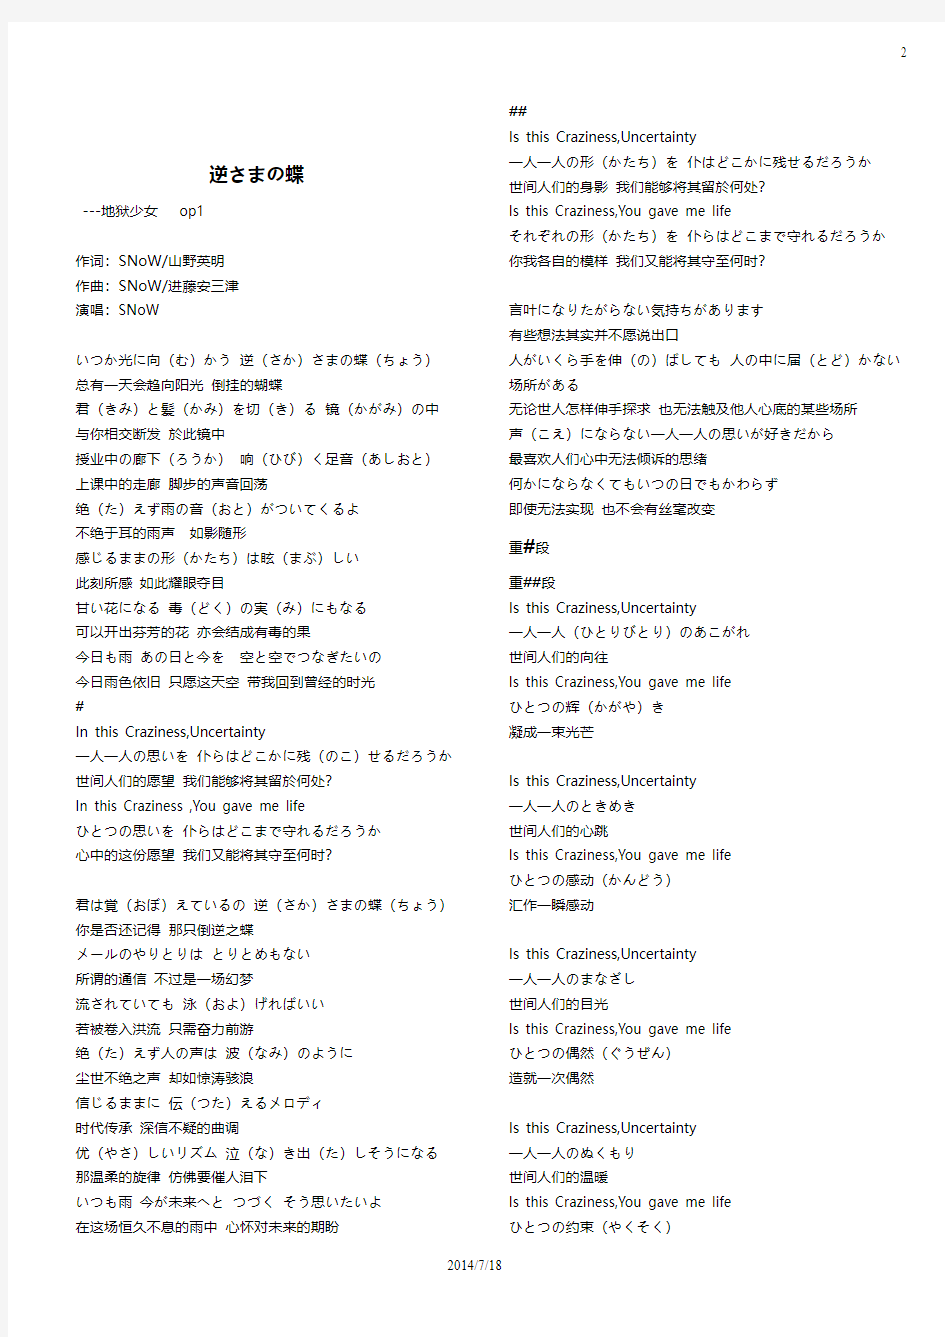 动漫日文歌词 完成版 一页一首 中日双语付假名